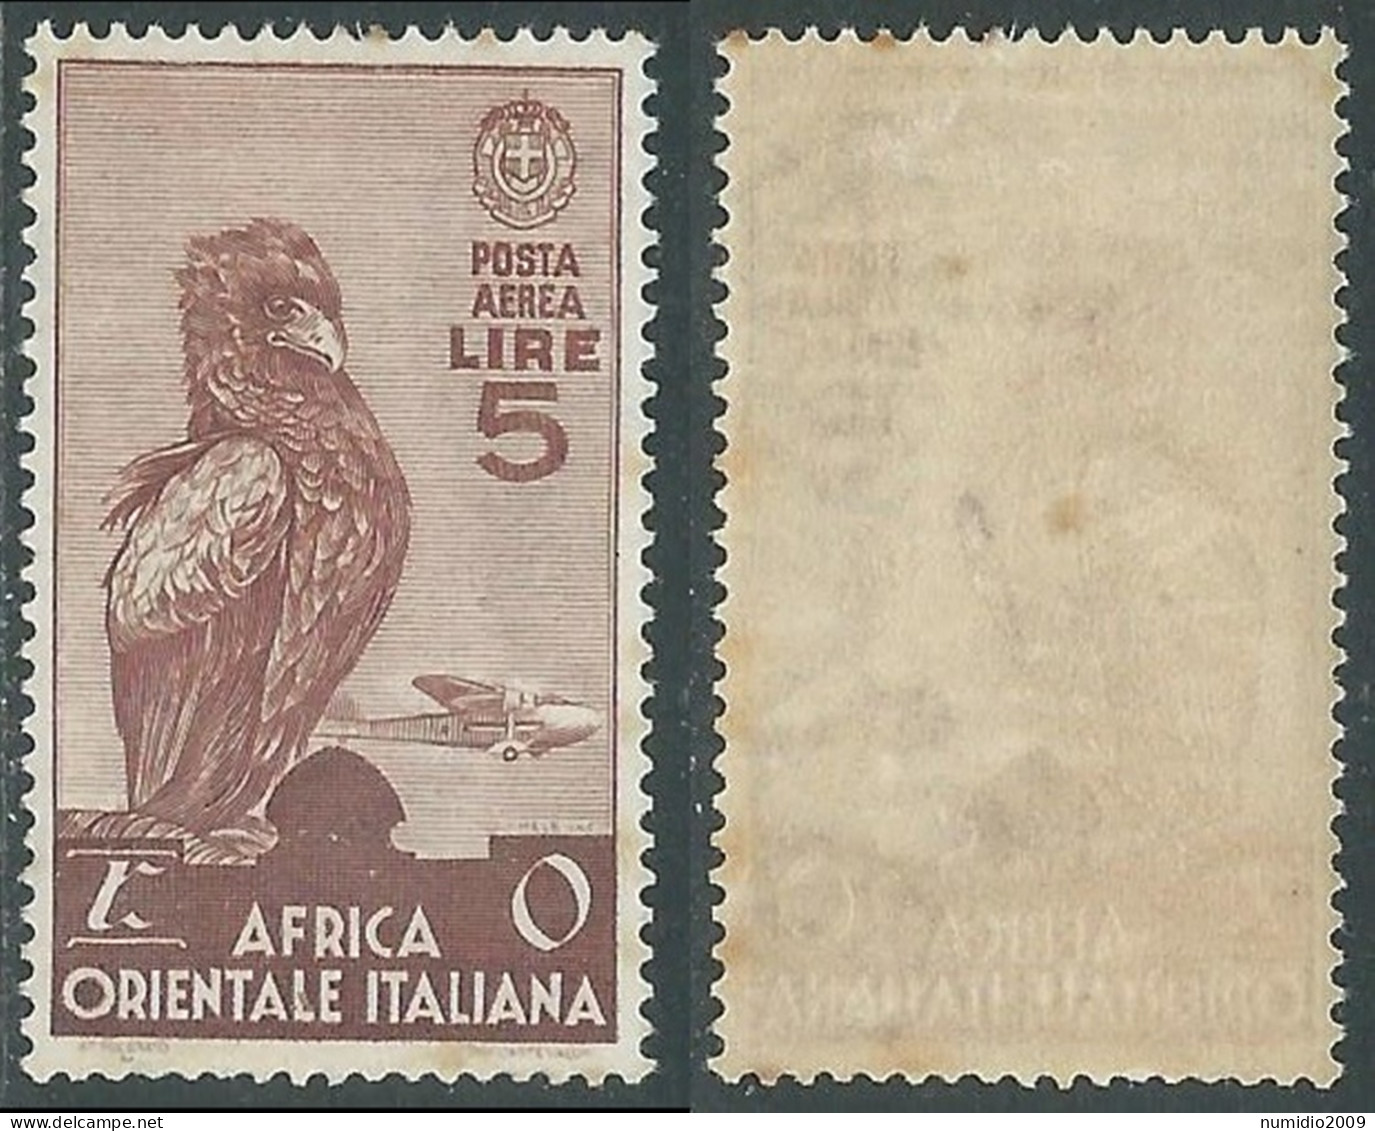 1938 AFRICA ORIENTALE ITALIANA POSTA AEREA 5 LIRE MACCHIE SU GOMMA MH * - I41 - Africa Oriental Italiana